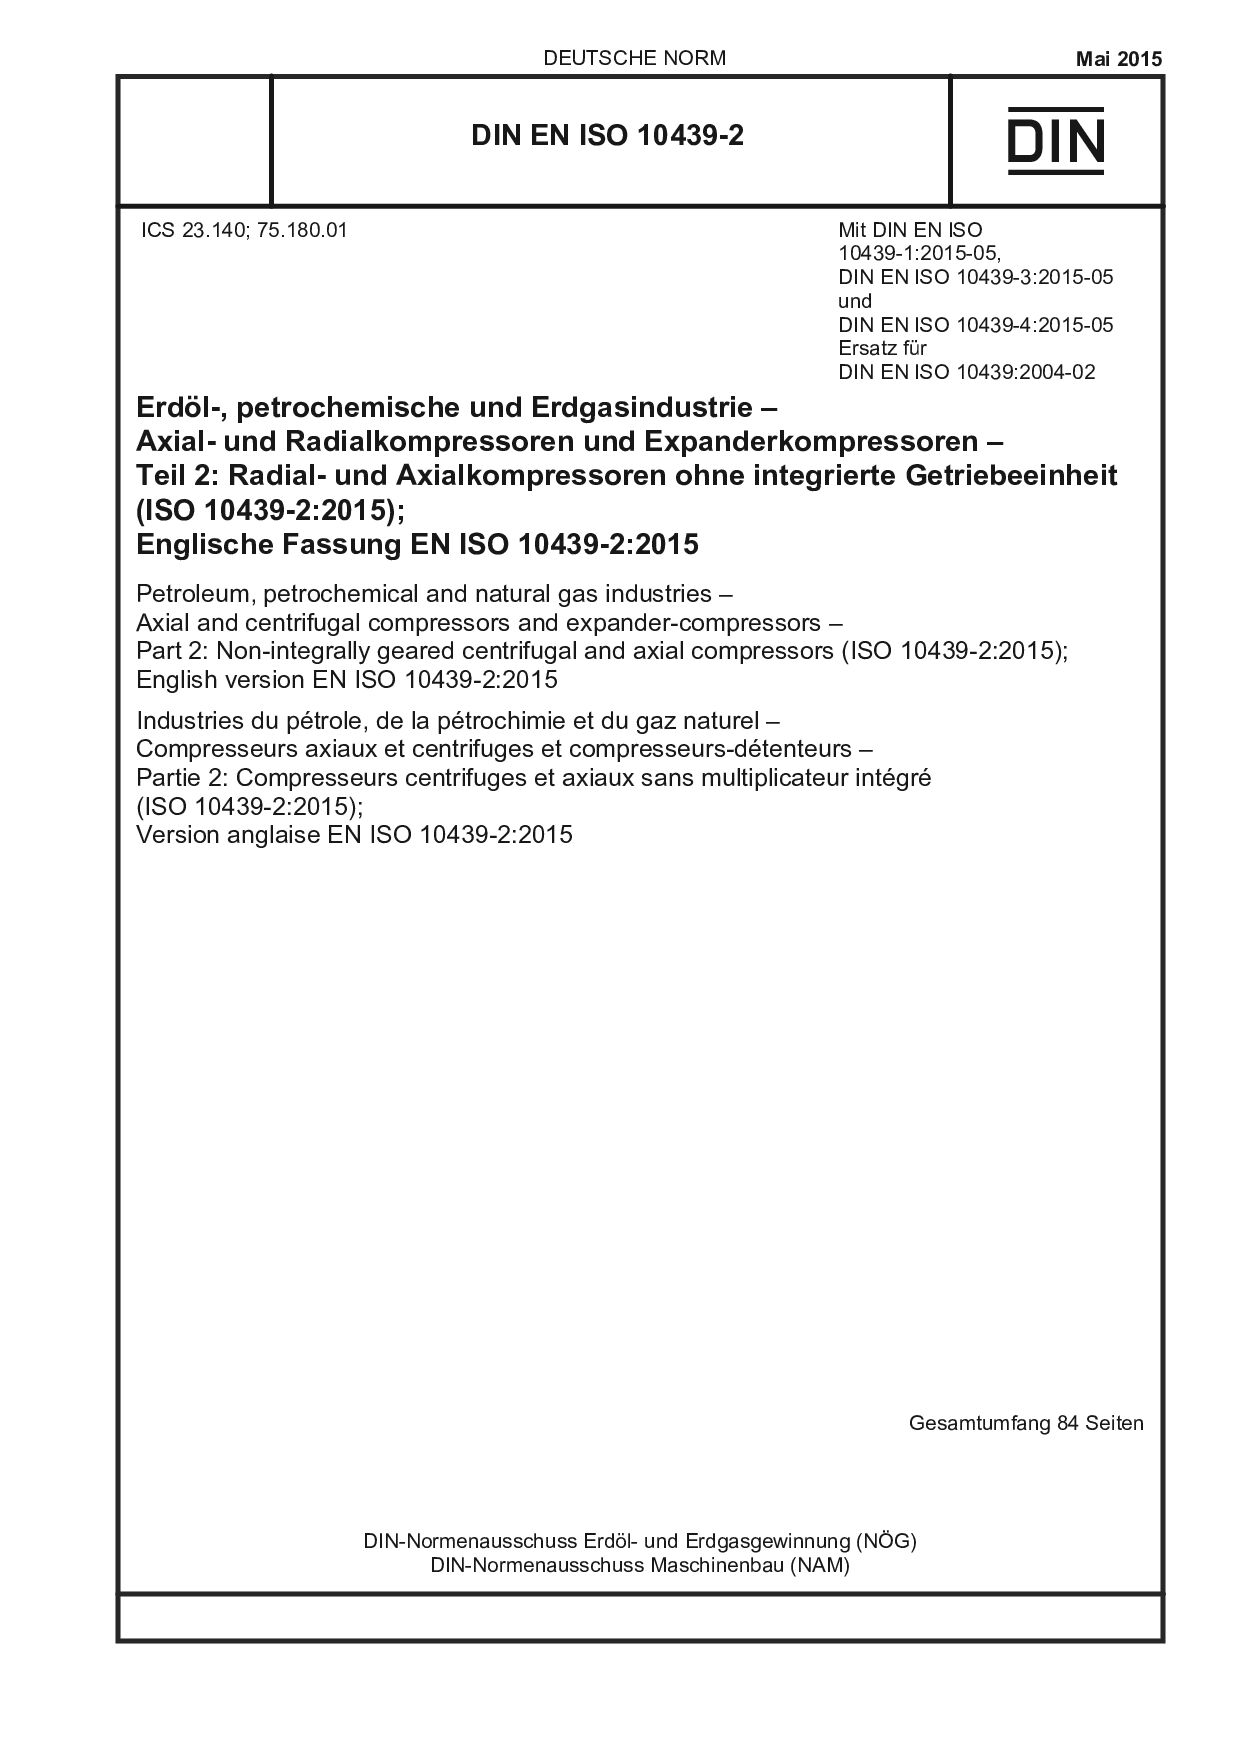 DIN EN ISO 10439-2:2015封面图